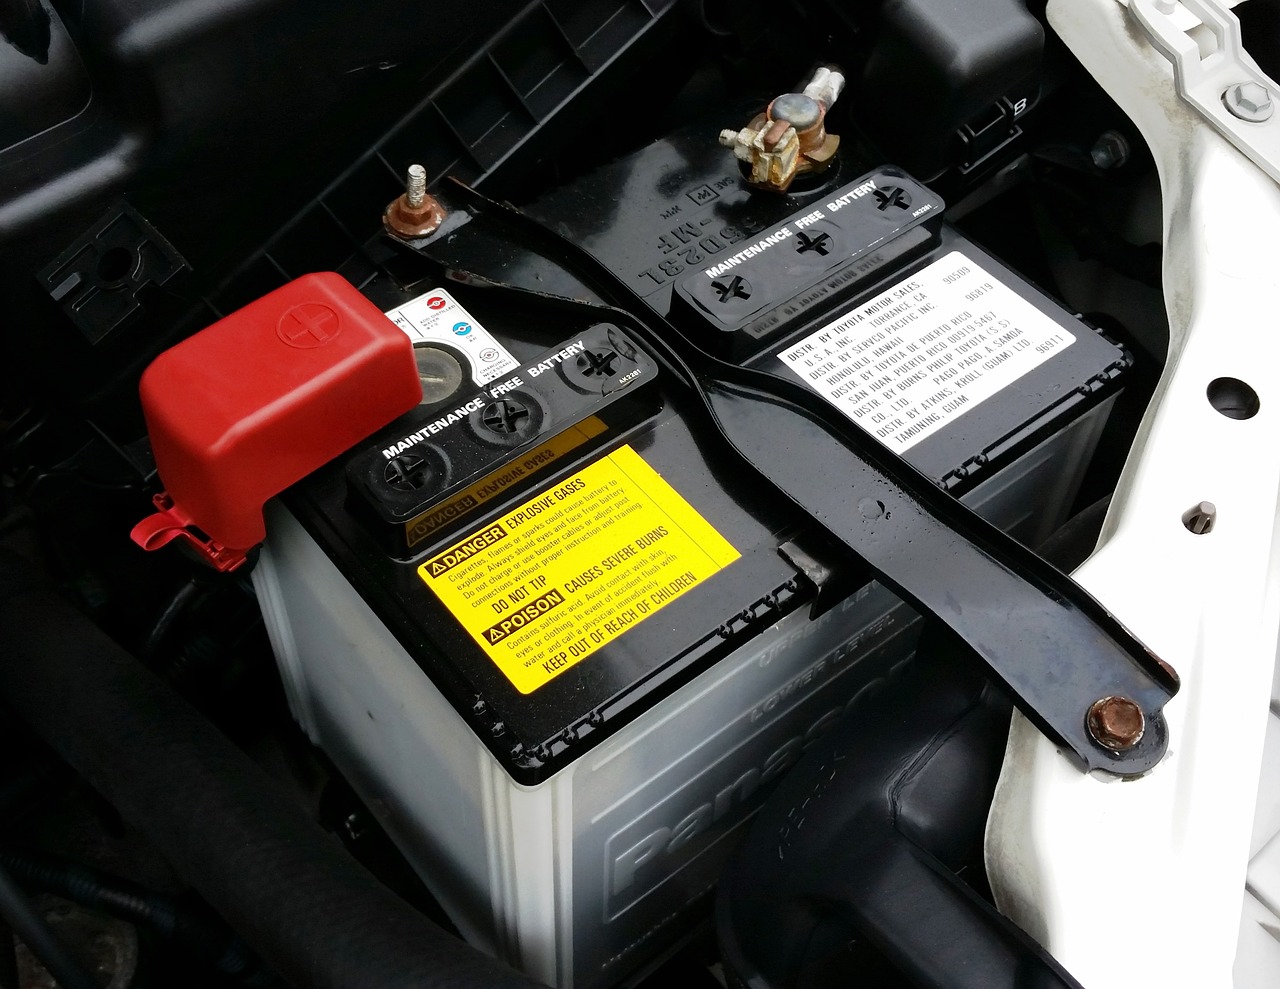 Les batteries venaient d'être volées dans deux véhicules rue Kennedy (Illustration © Pixabay)